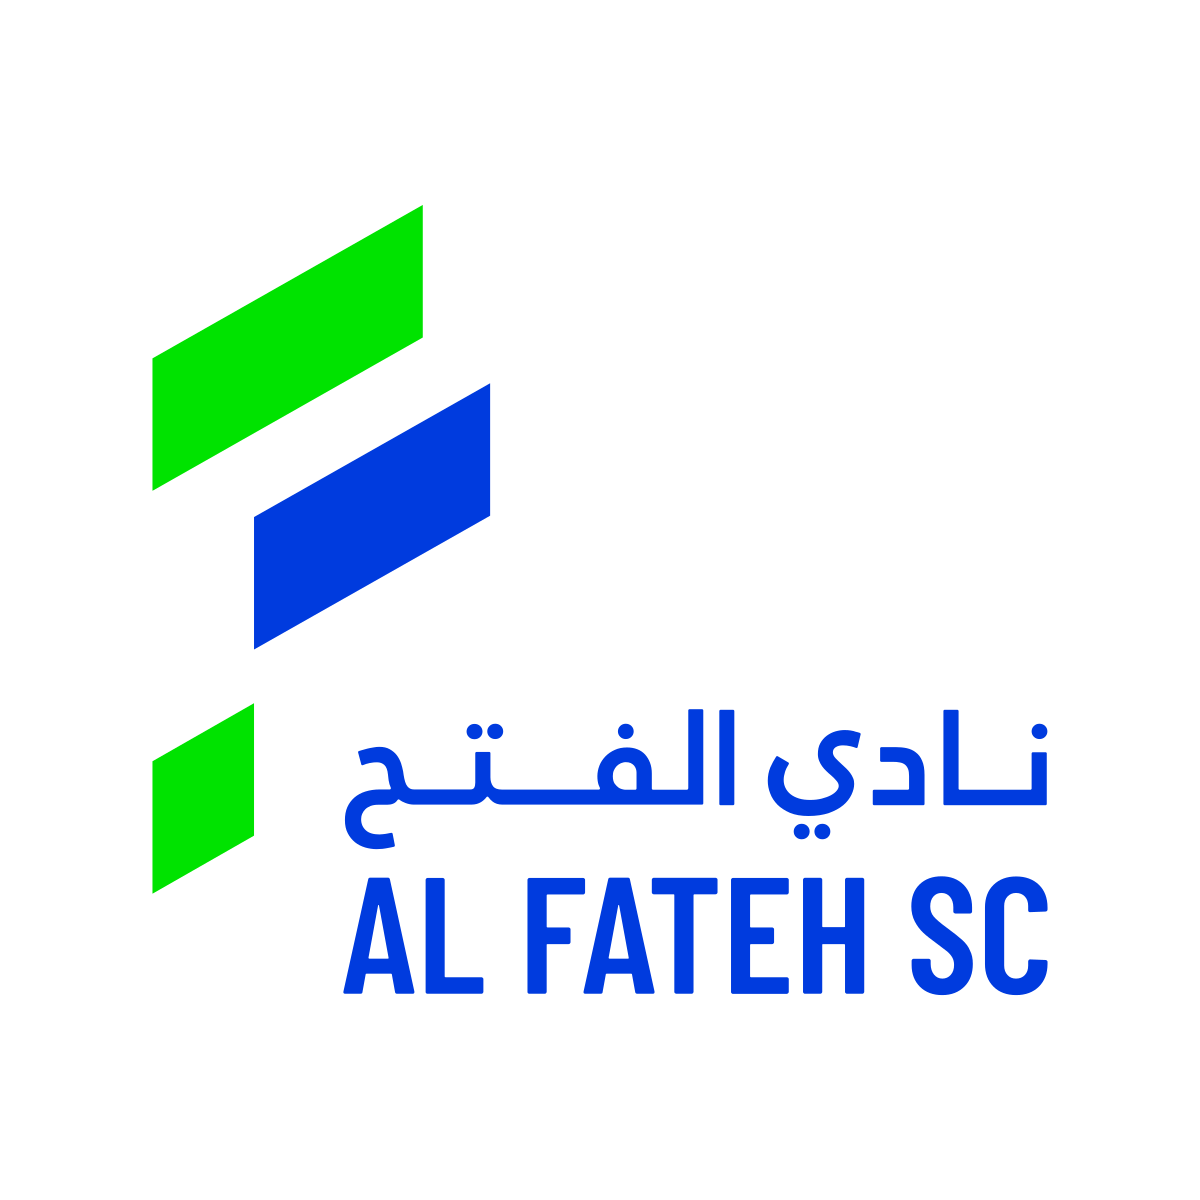 Al Fateh-2 logo